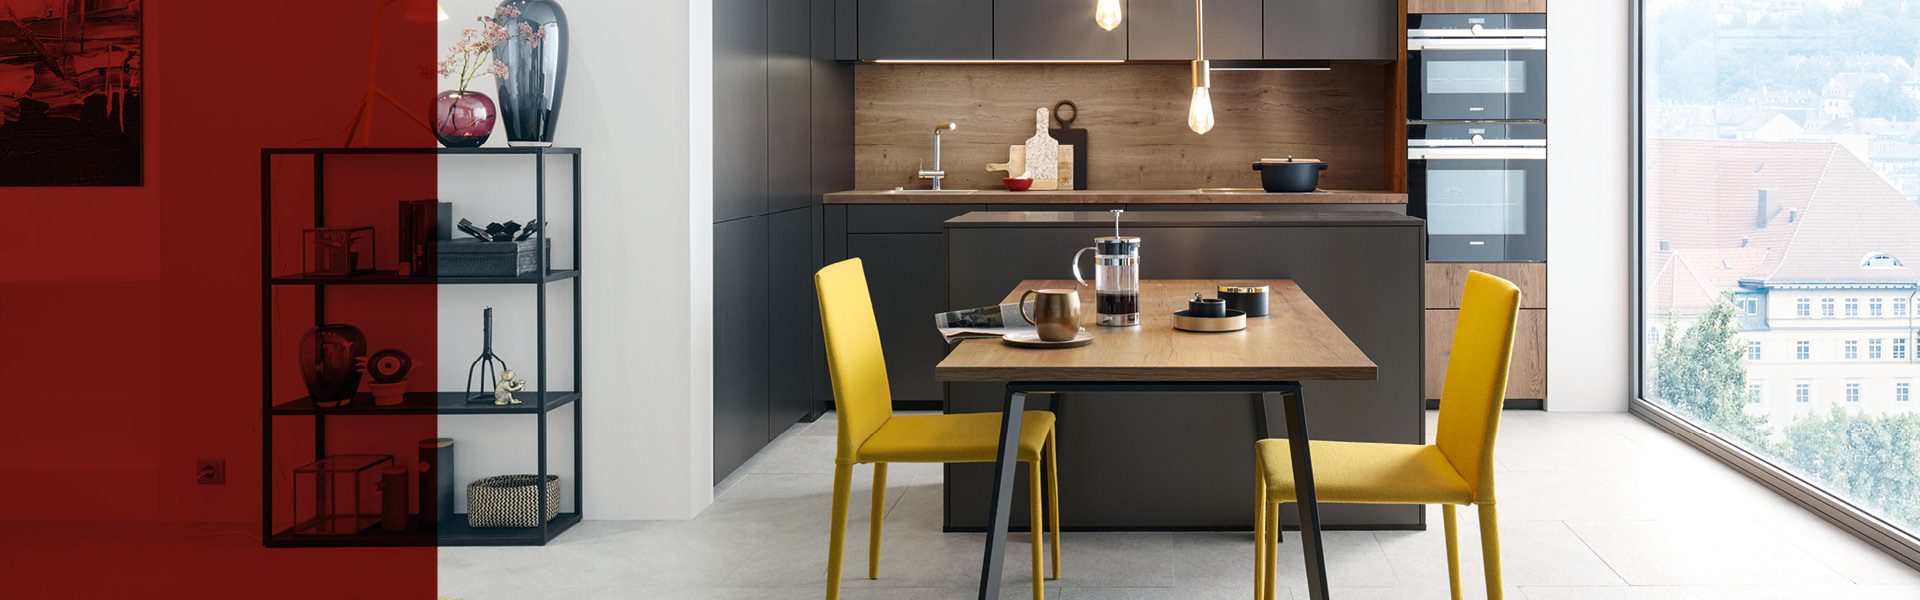 Küche mit Holzfronten gelben Stühlen